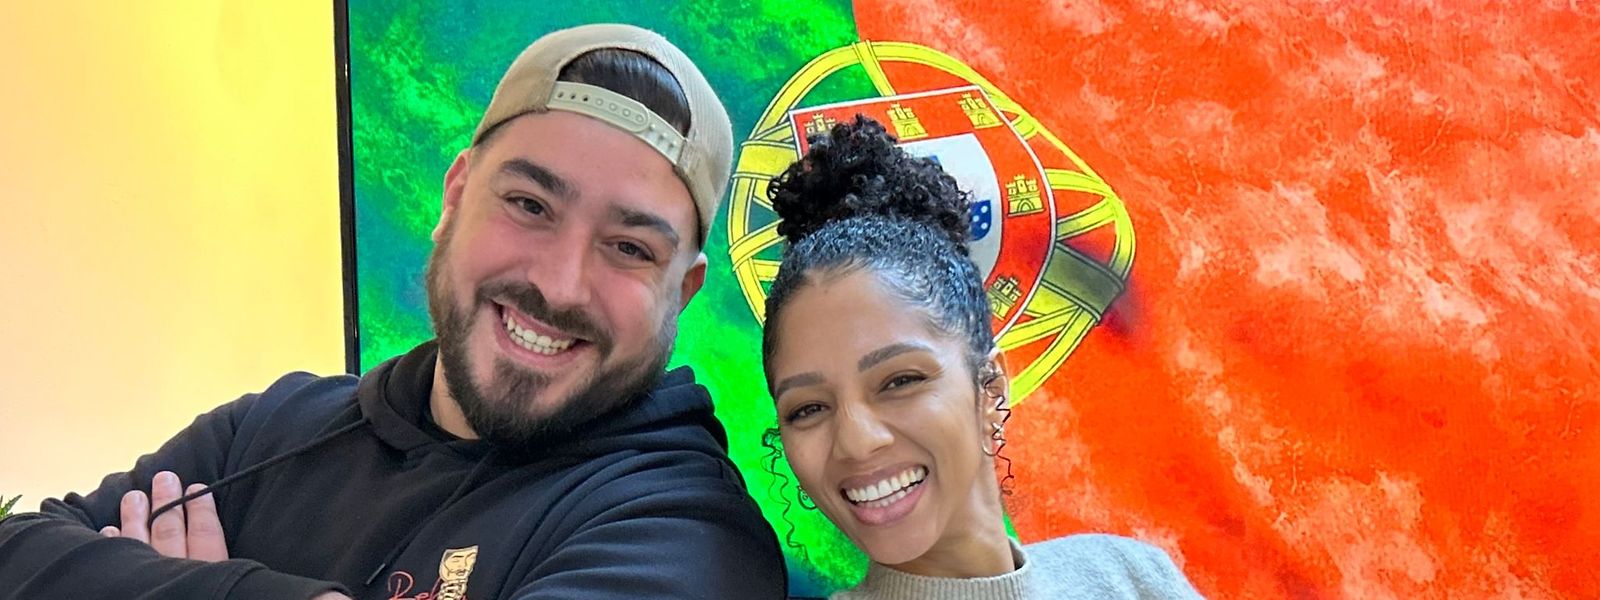 No Restaurante Favela, António Pires e Lenira acreditam que todos vão celebrar com alegria a vitória de Portugal.